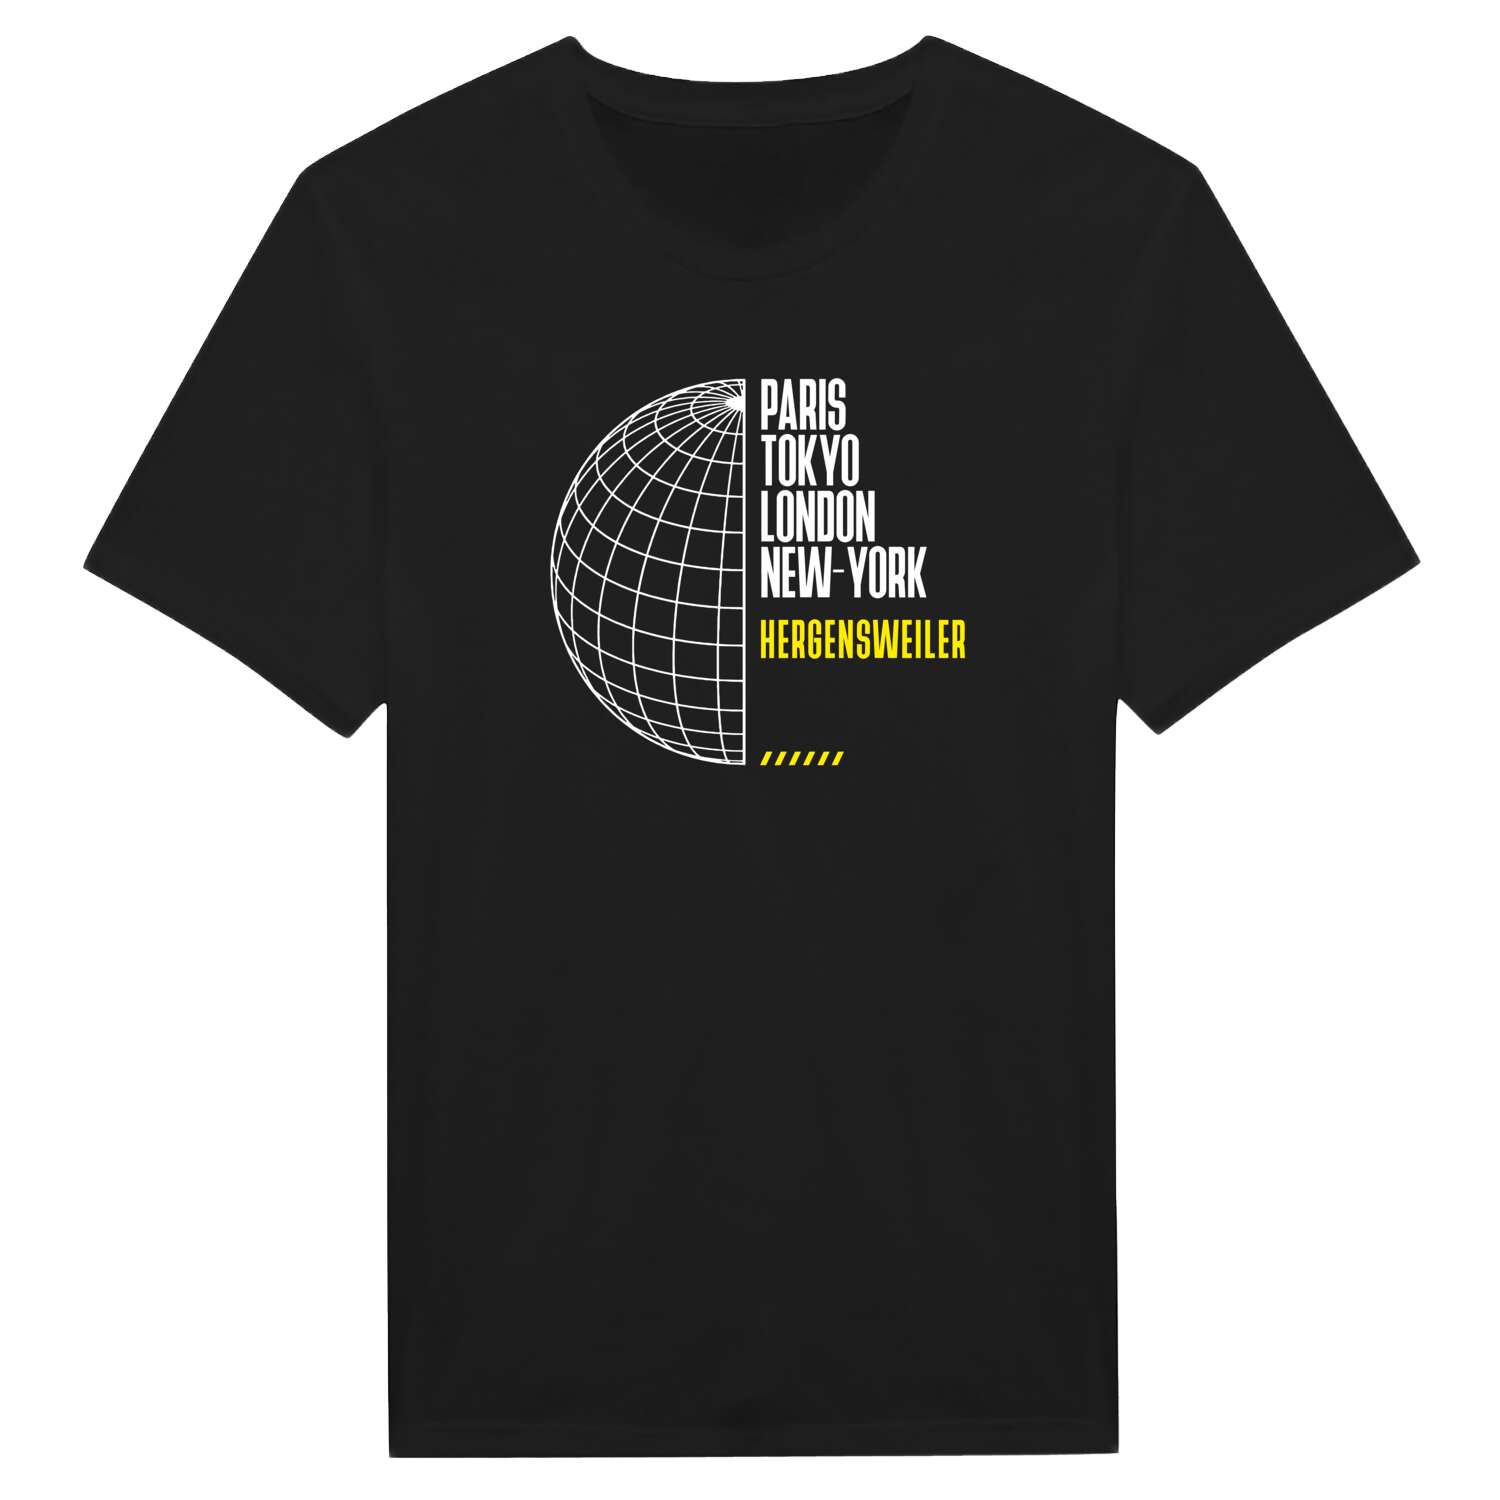 Hergensweiler T-Shirt »Paris Tokyo London«